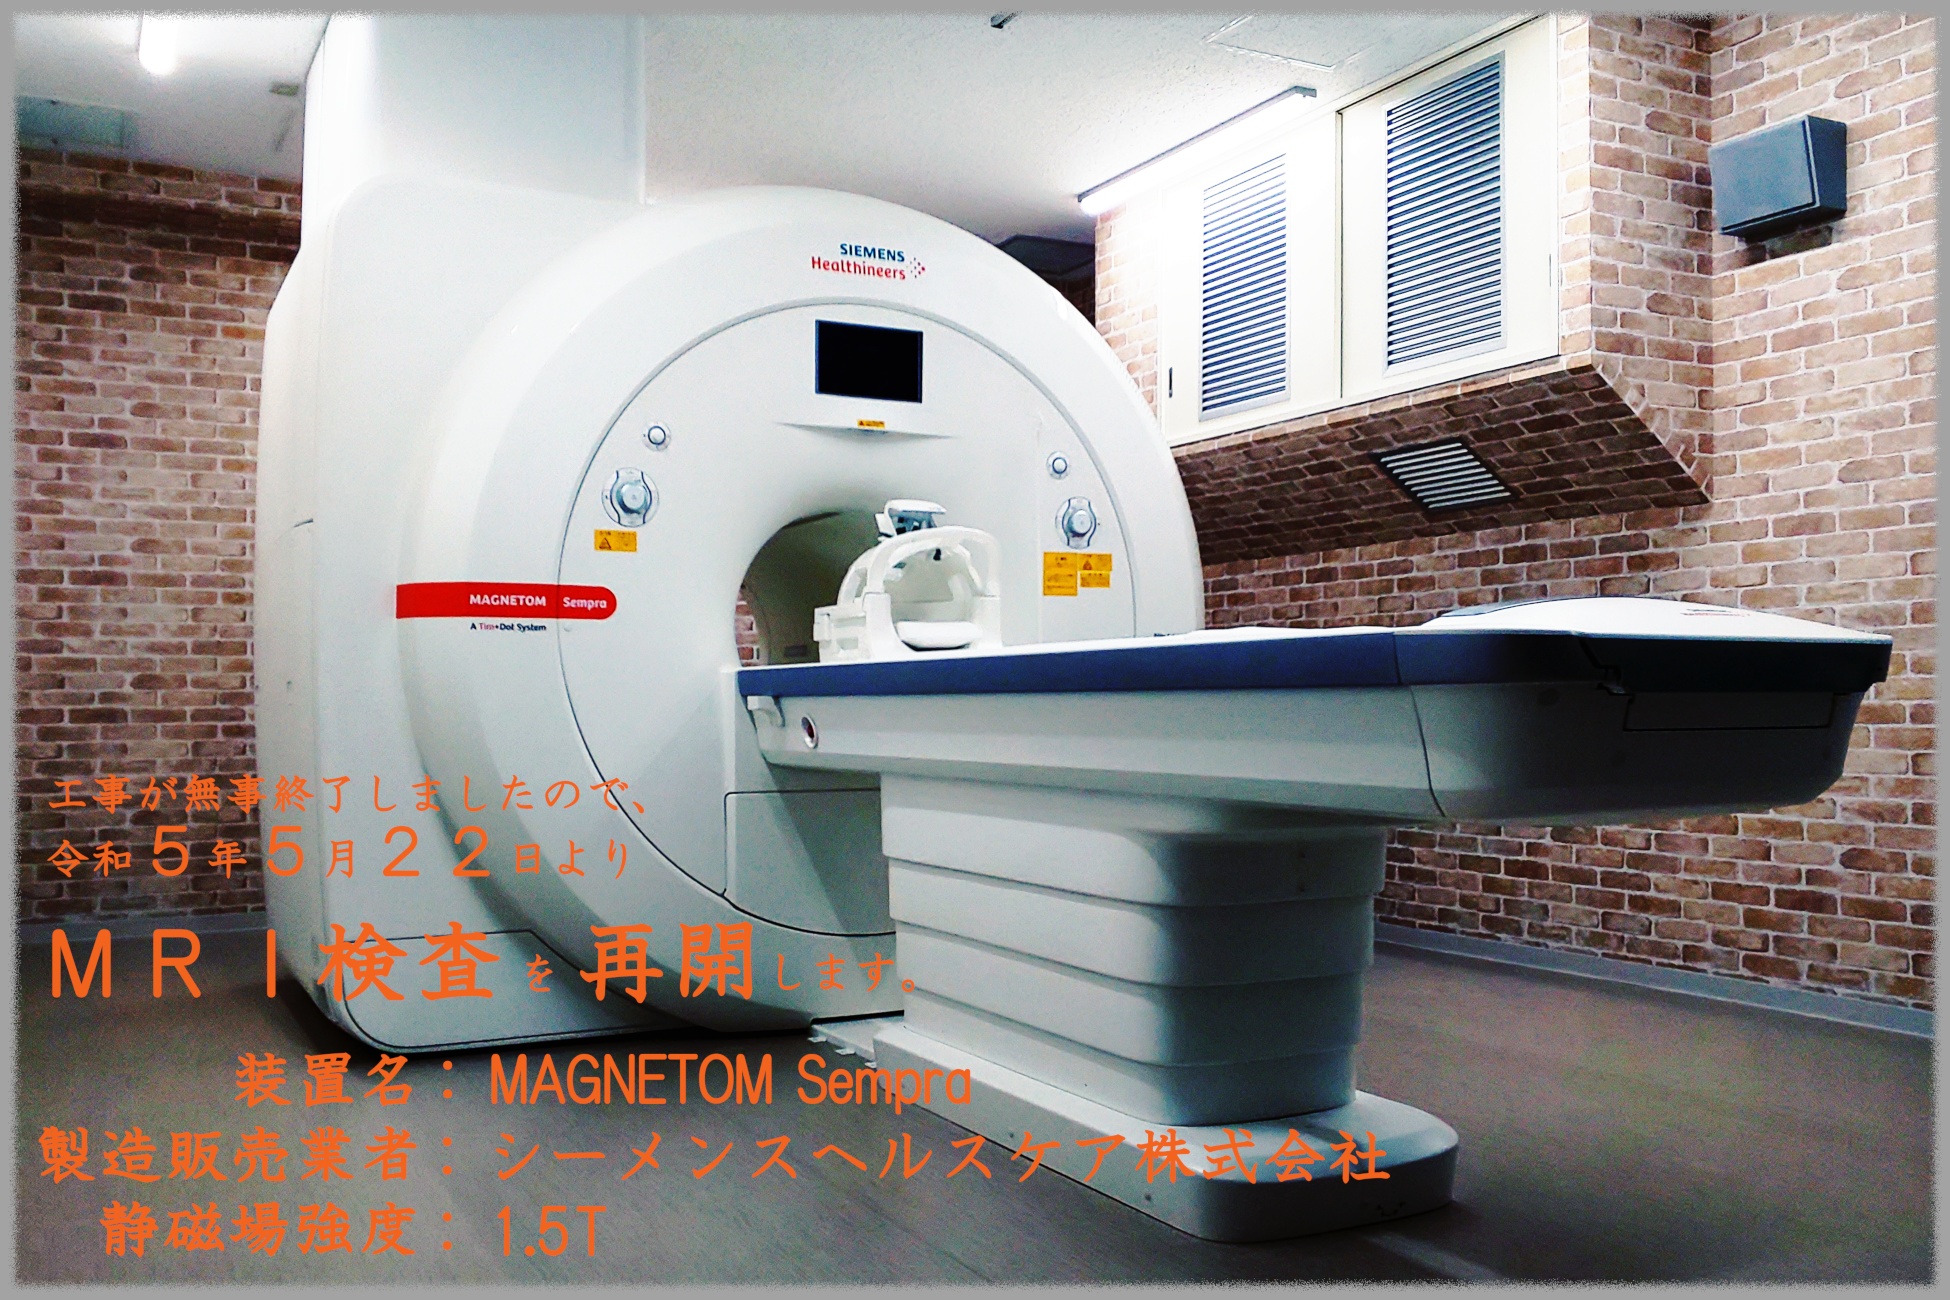 令和５年５月２２日からMRI装置による検査を再開します。